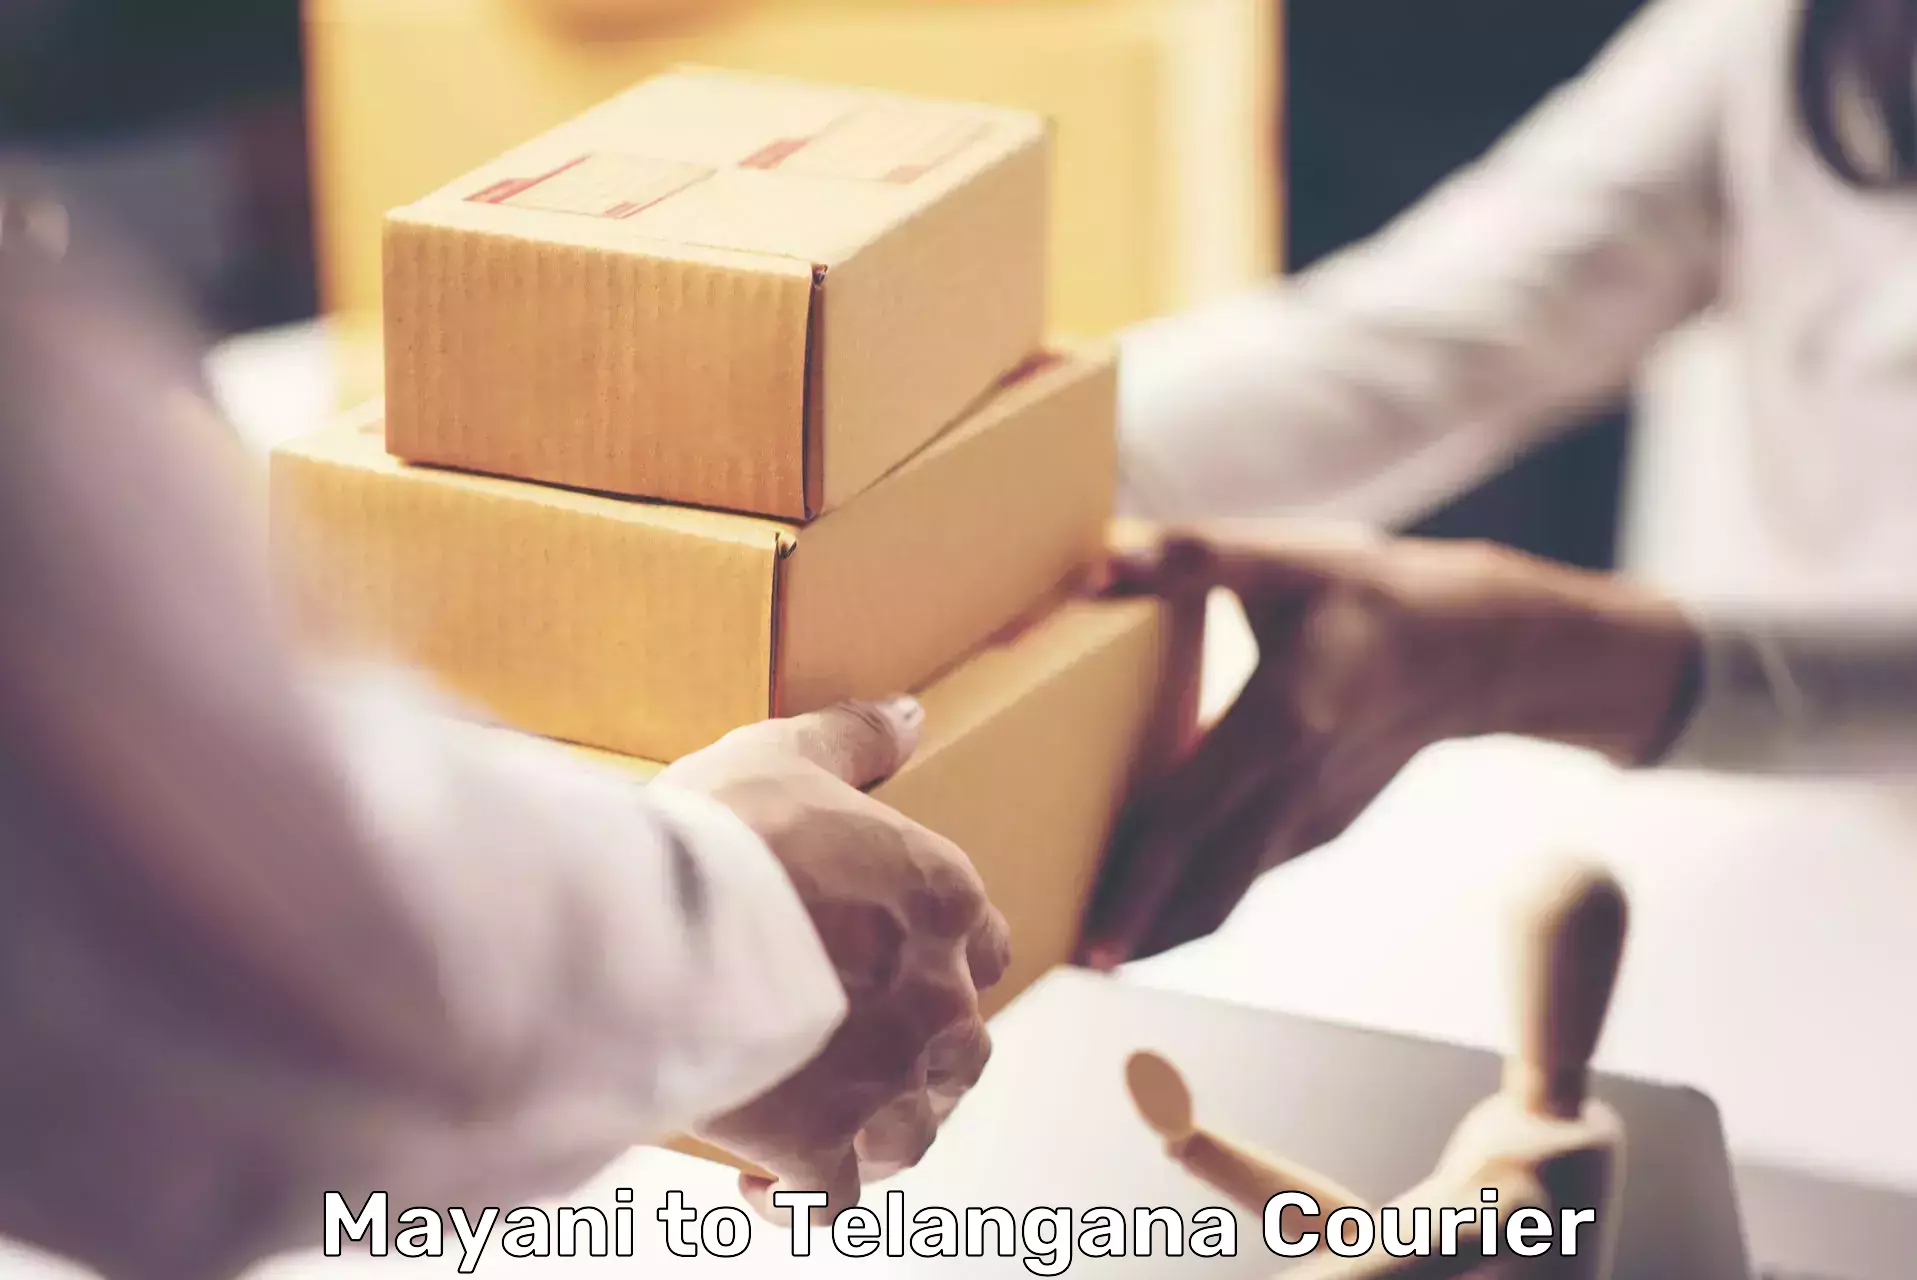 Express logistics providers Mayani to Rayaparthi